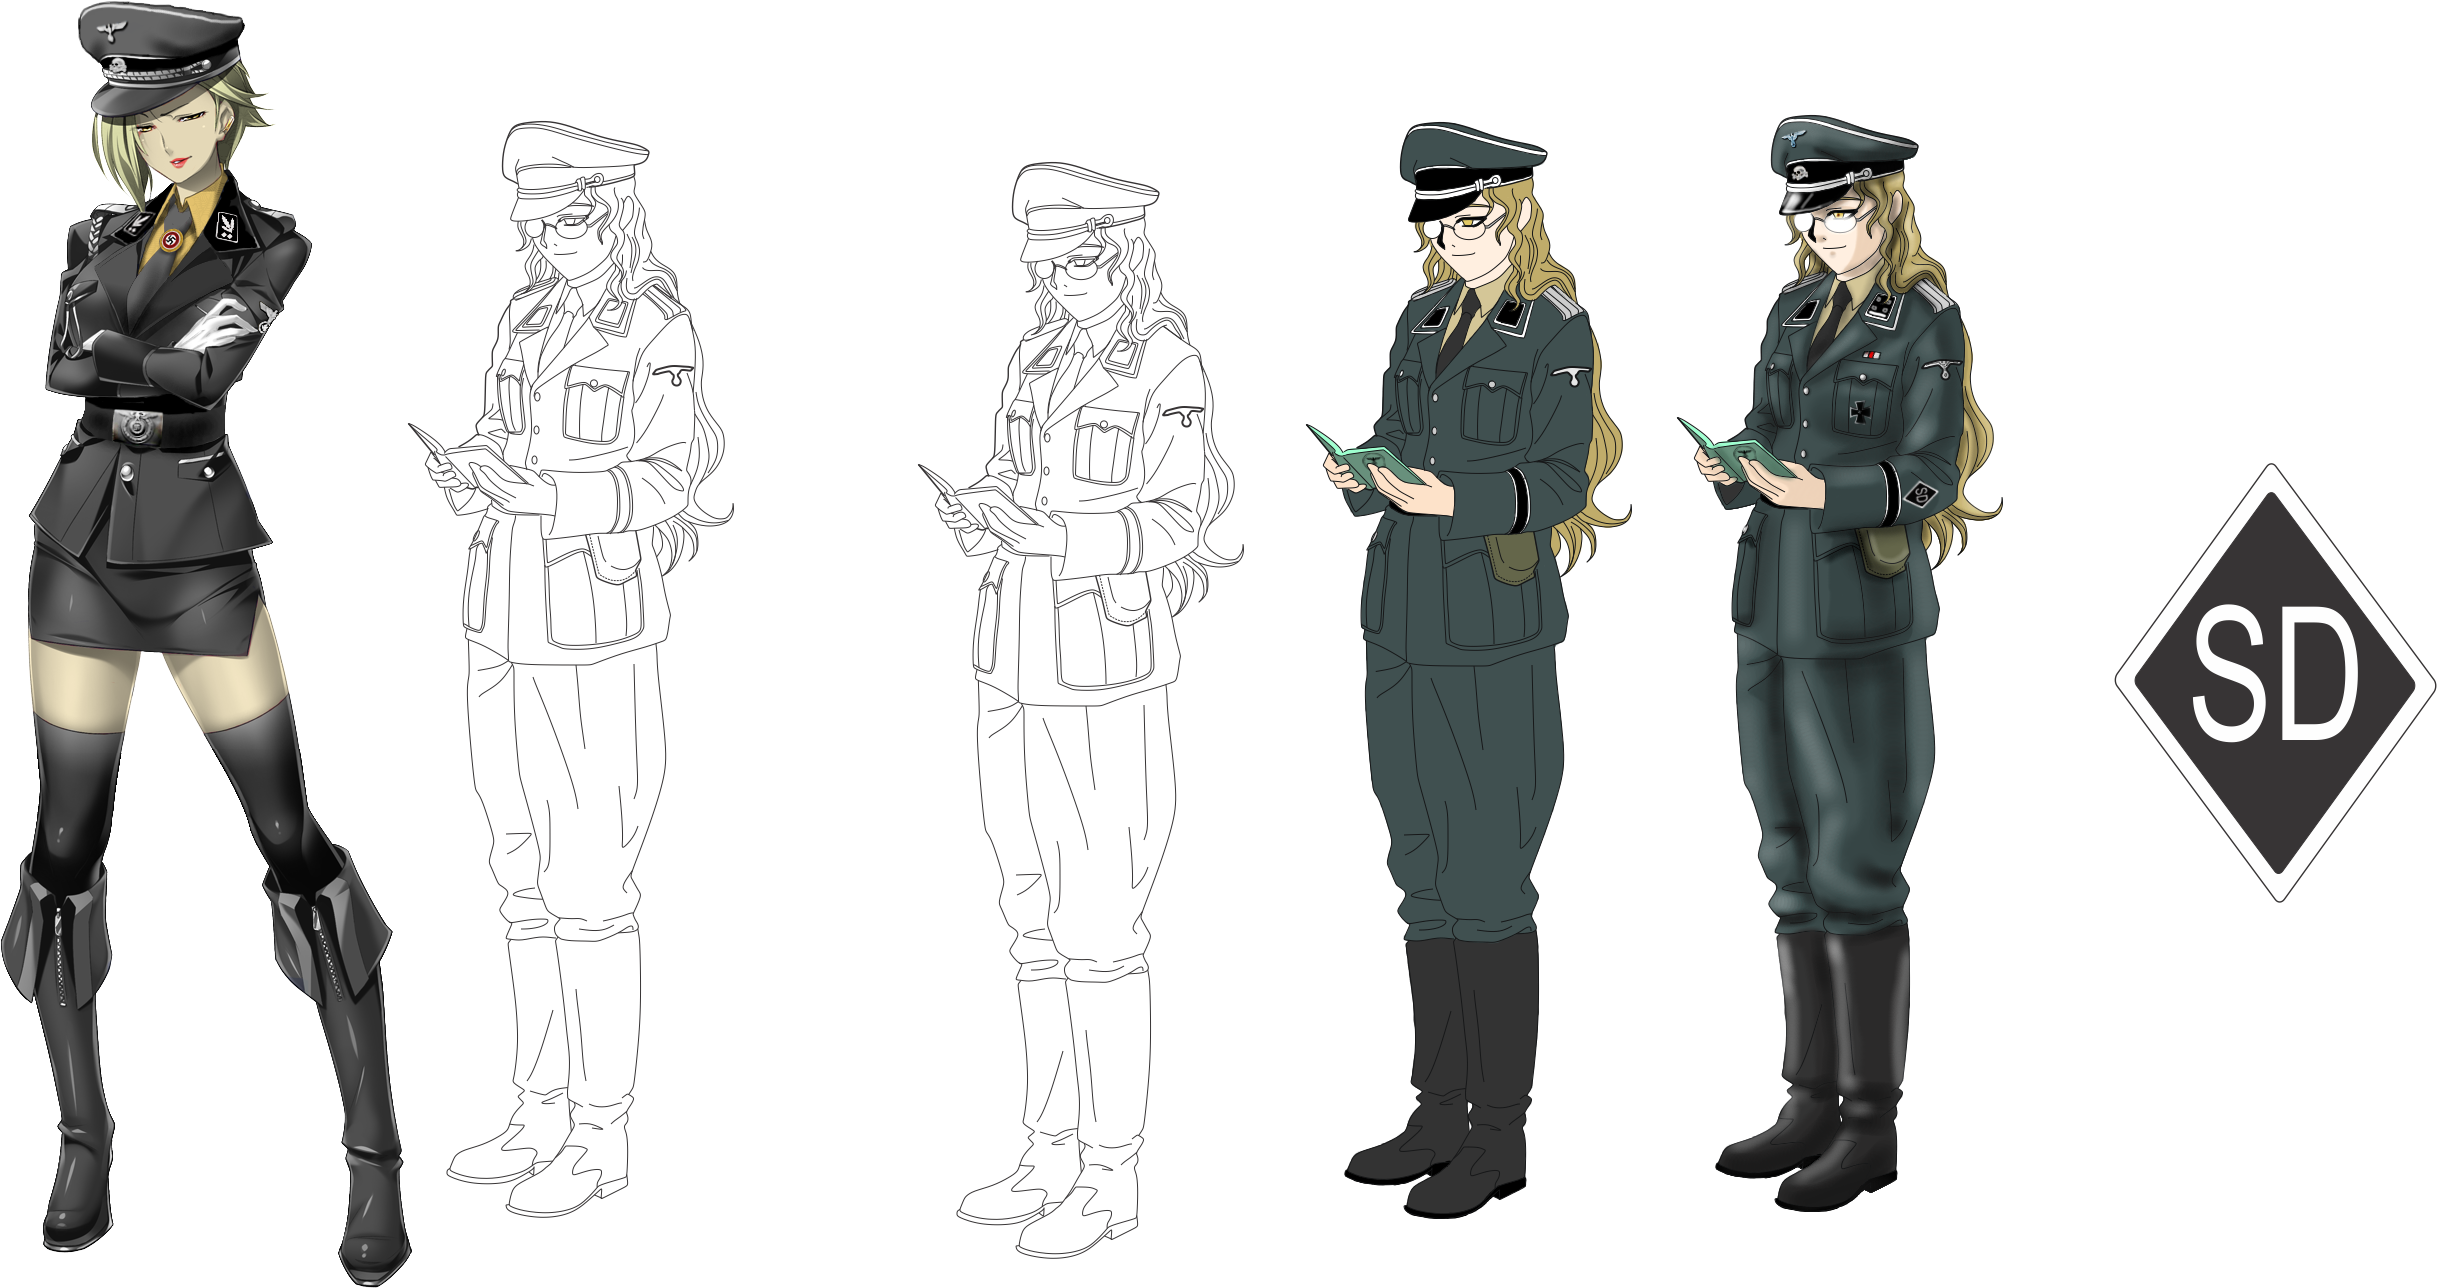 Anime Sd Officer Extra Pack By Fvsj - Anime Military Officer Girl (2551x1382)